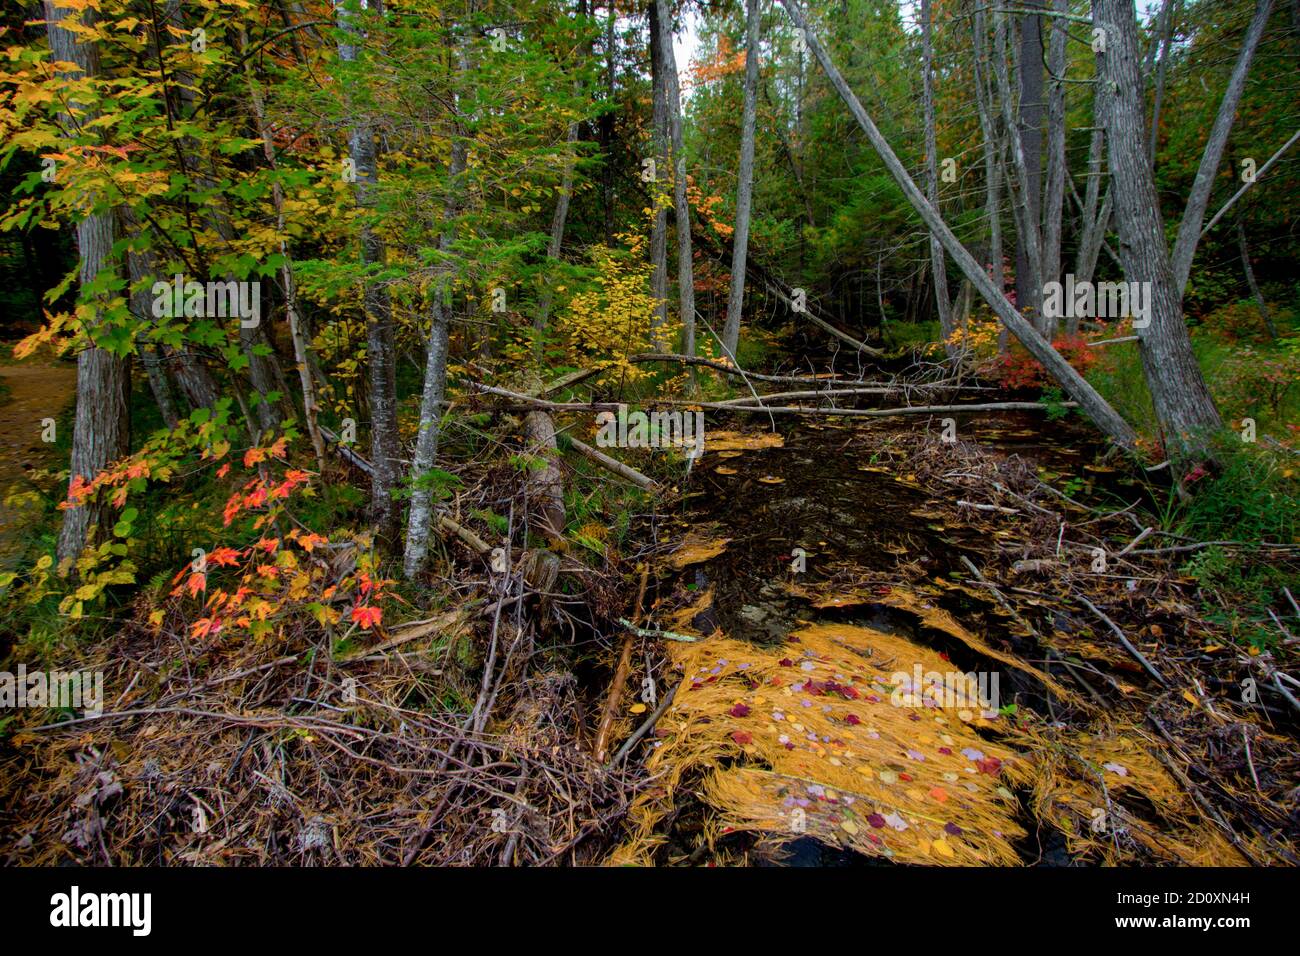 Paysage forestier d'automne. Ruisseau à travers une forêt avec feuillage d'automne dans le nord du Michigan au parc régional de Hartwick Pines Banque D'Images